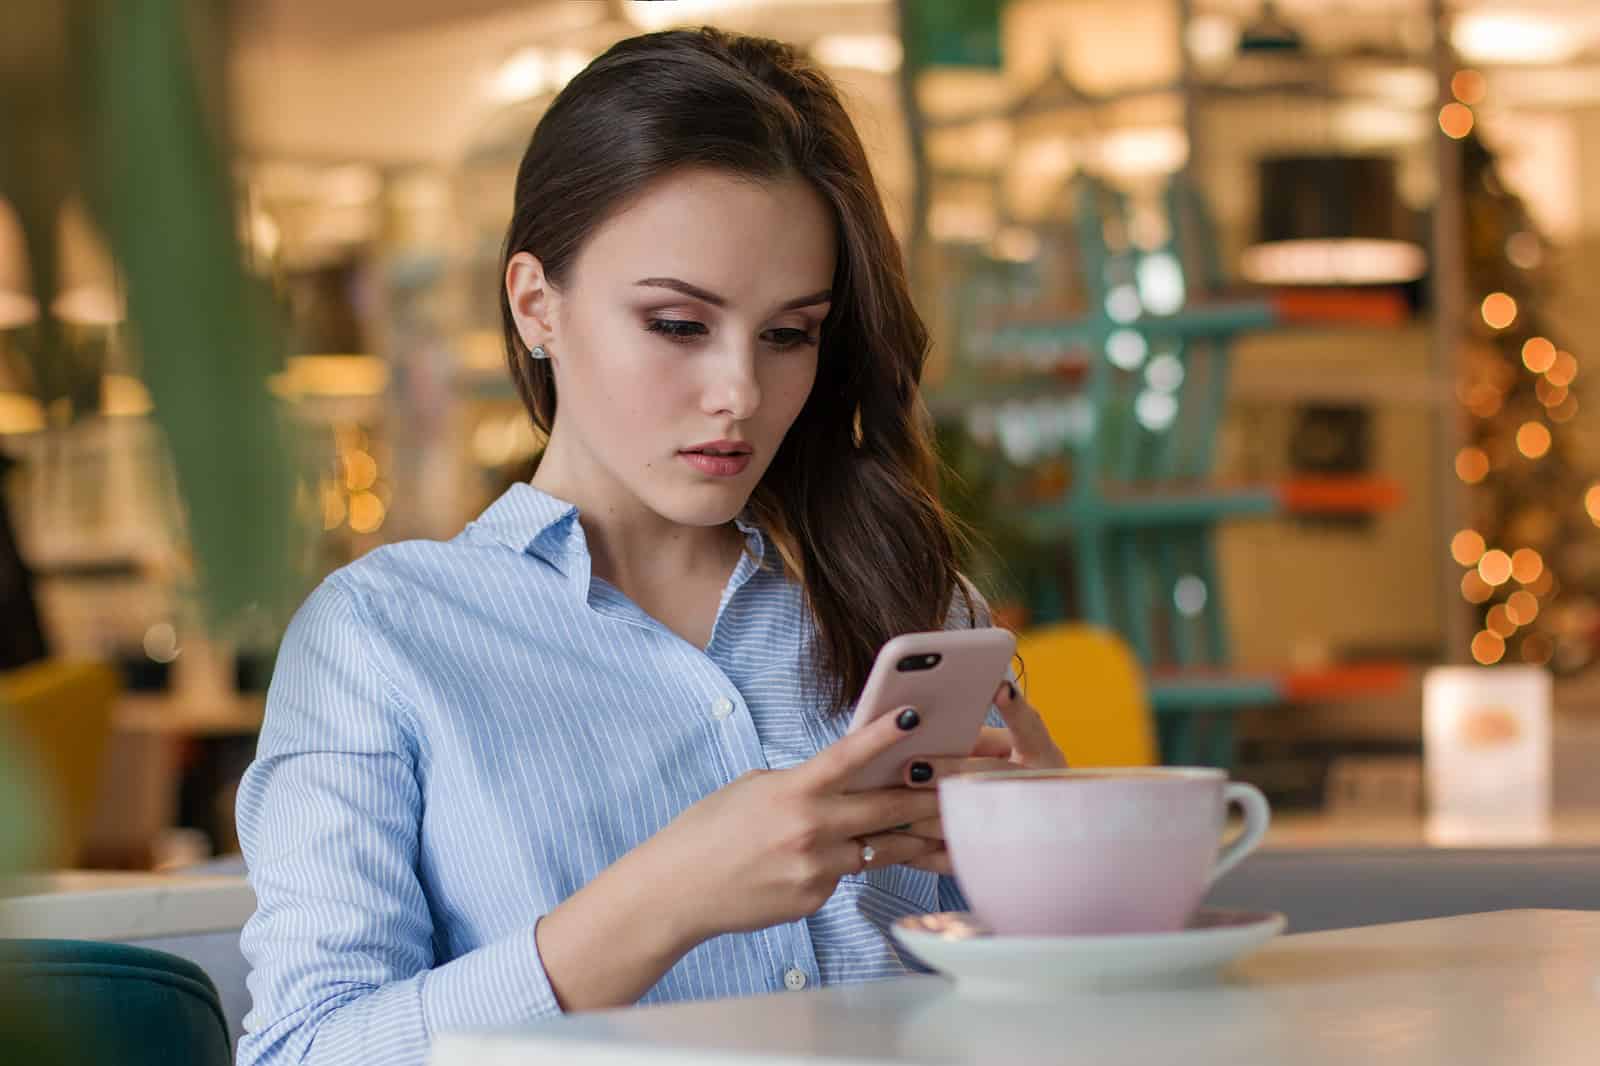 verwirrte Frau mit ihrem Smartphone im Café sitzen